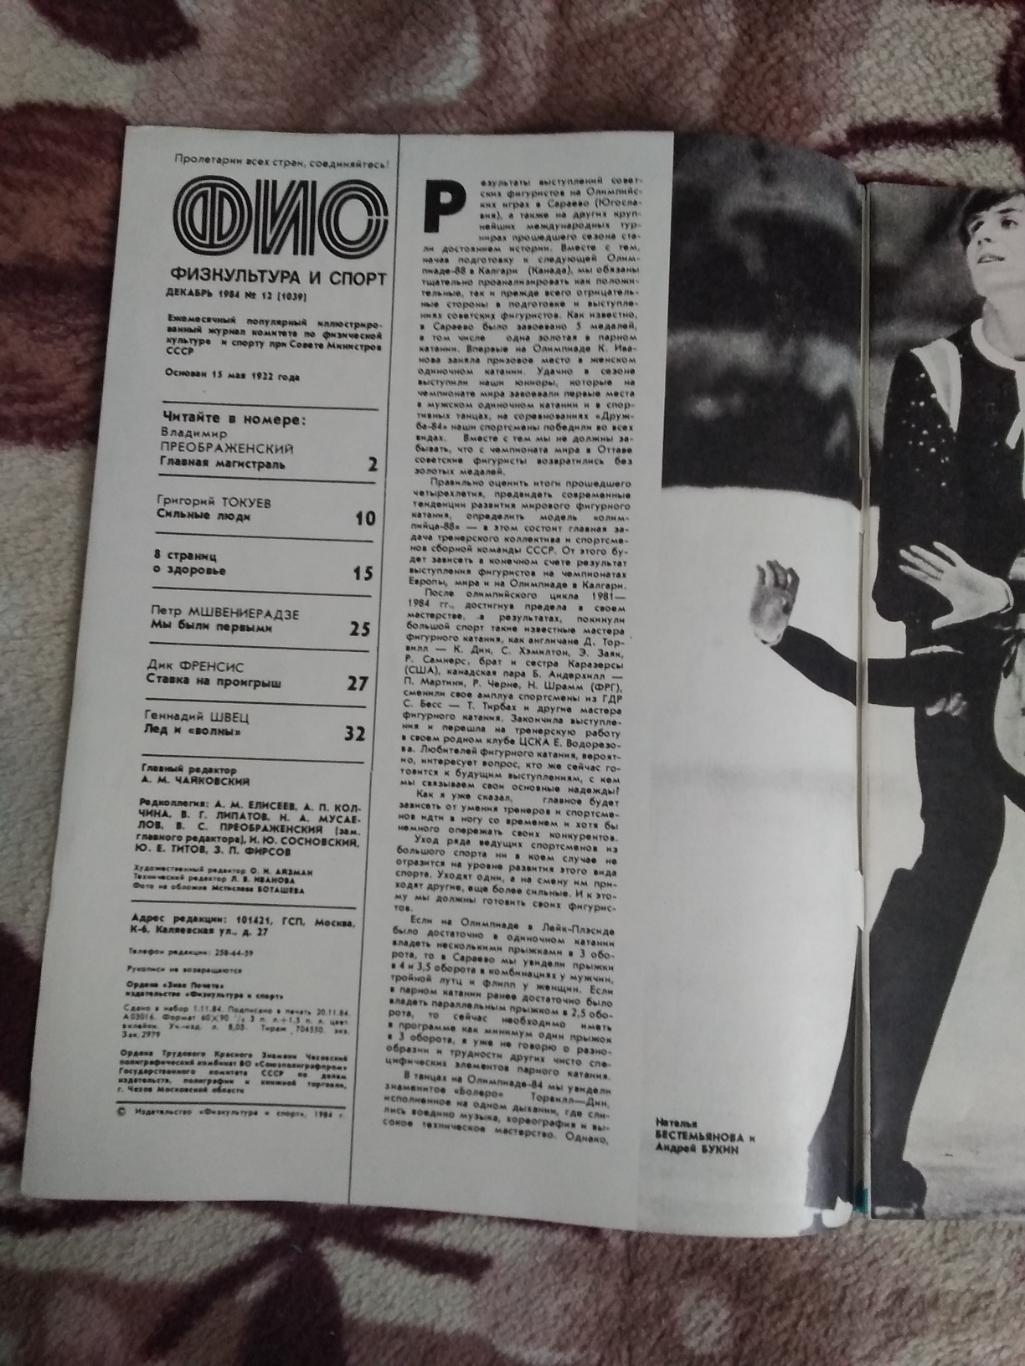 Журнал.Физкультура и спорт № 12 1984 г. (ФиС). 1